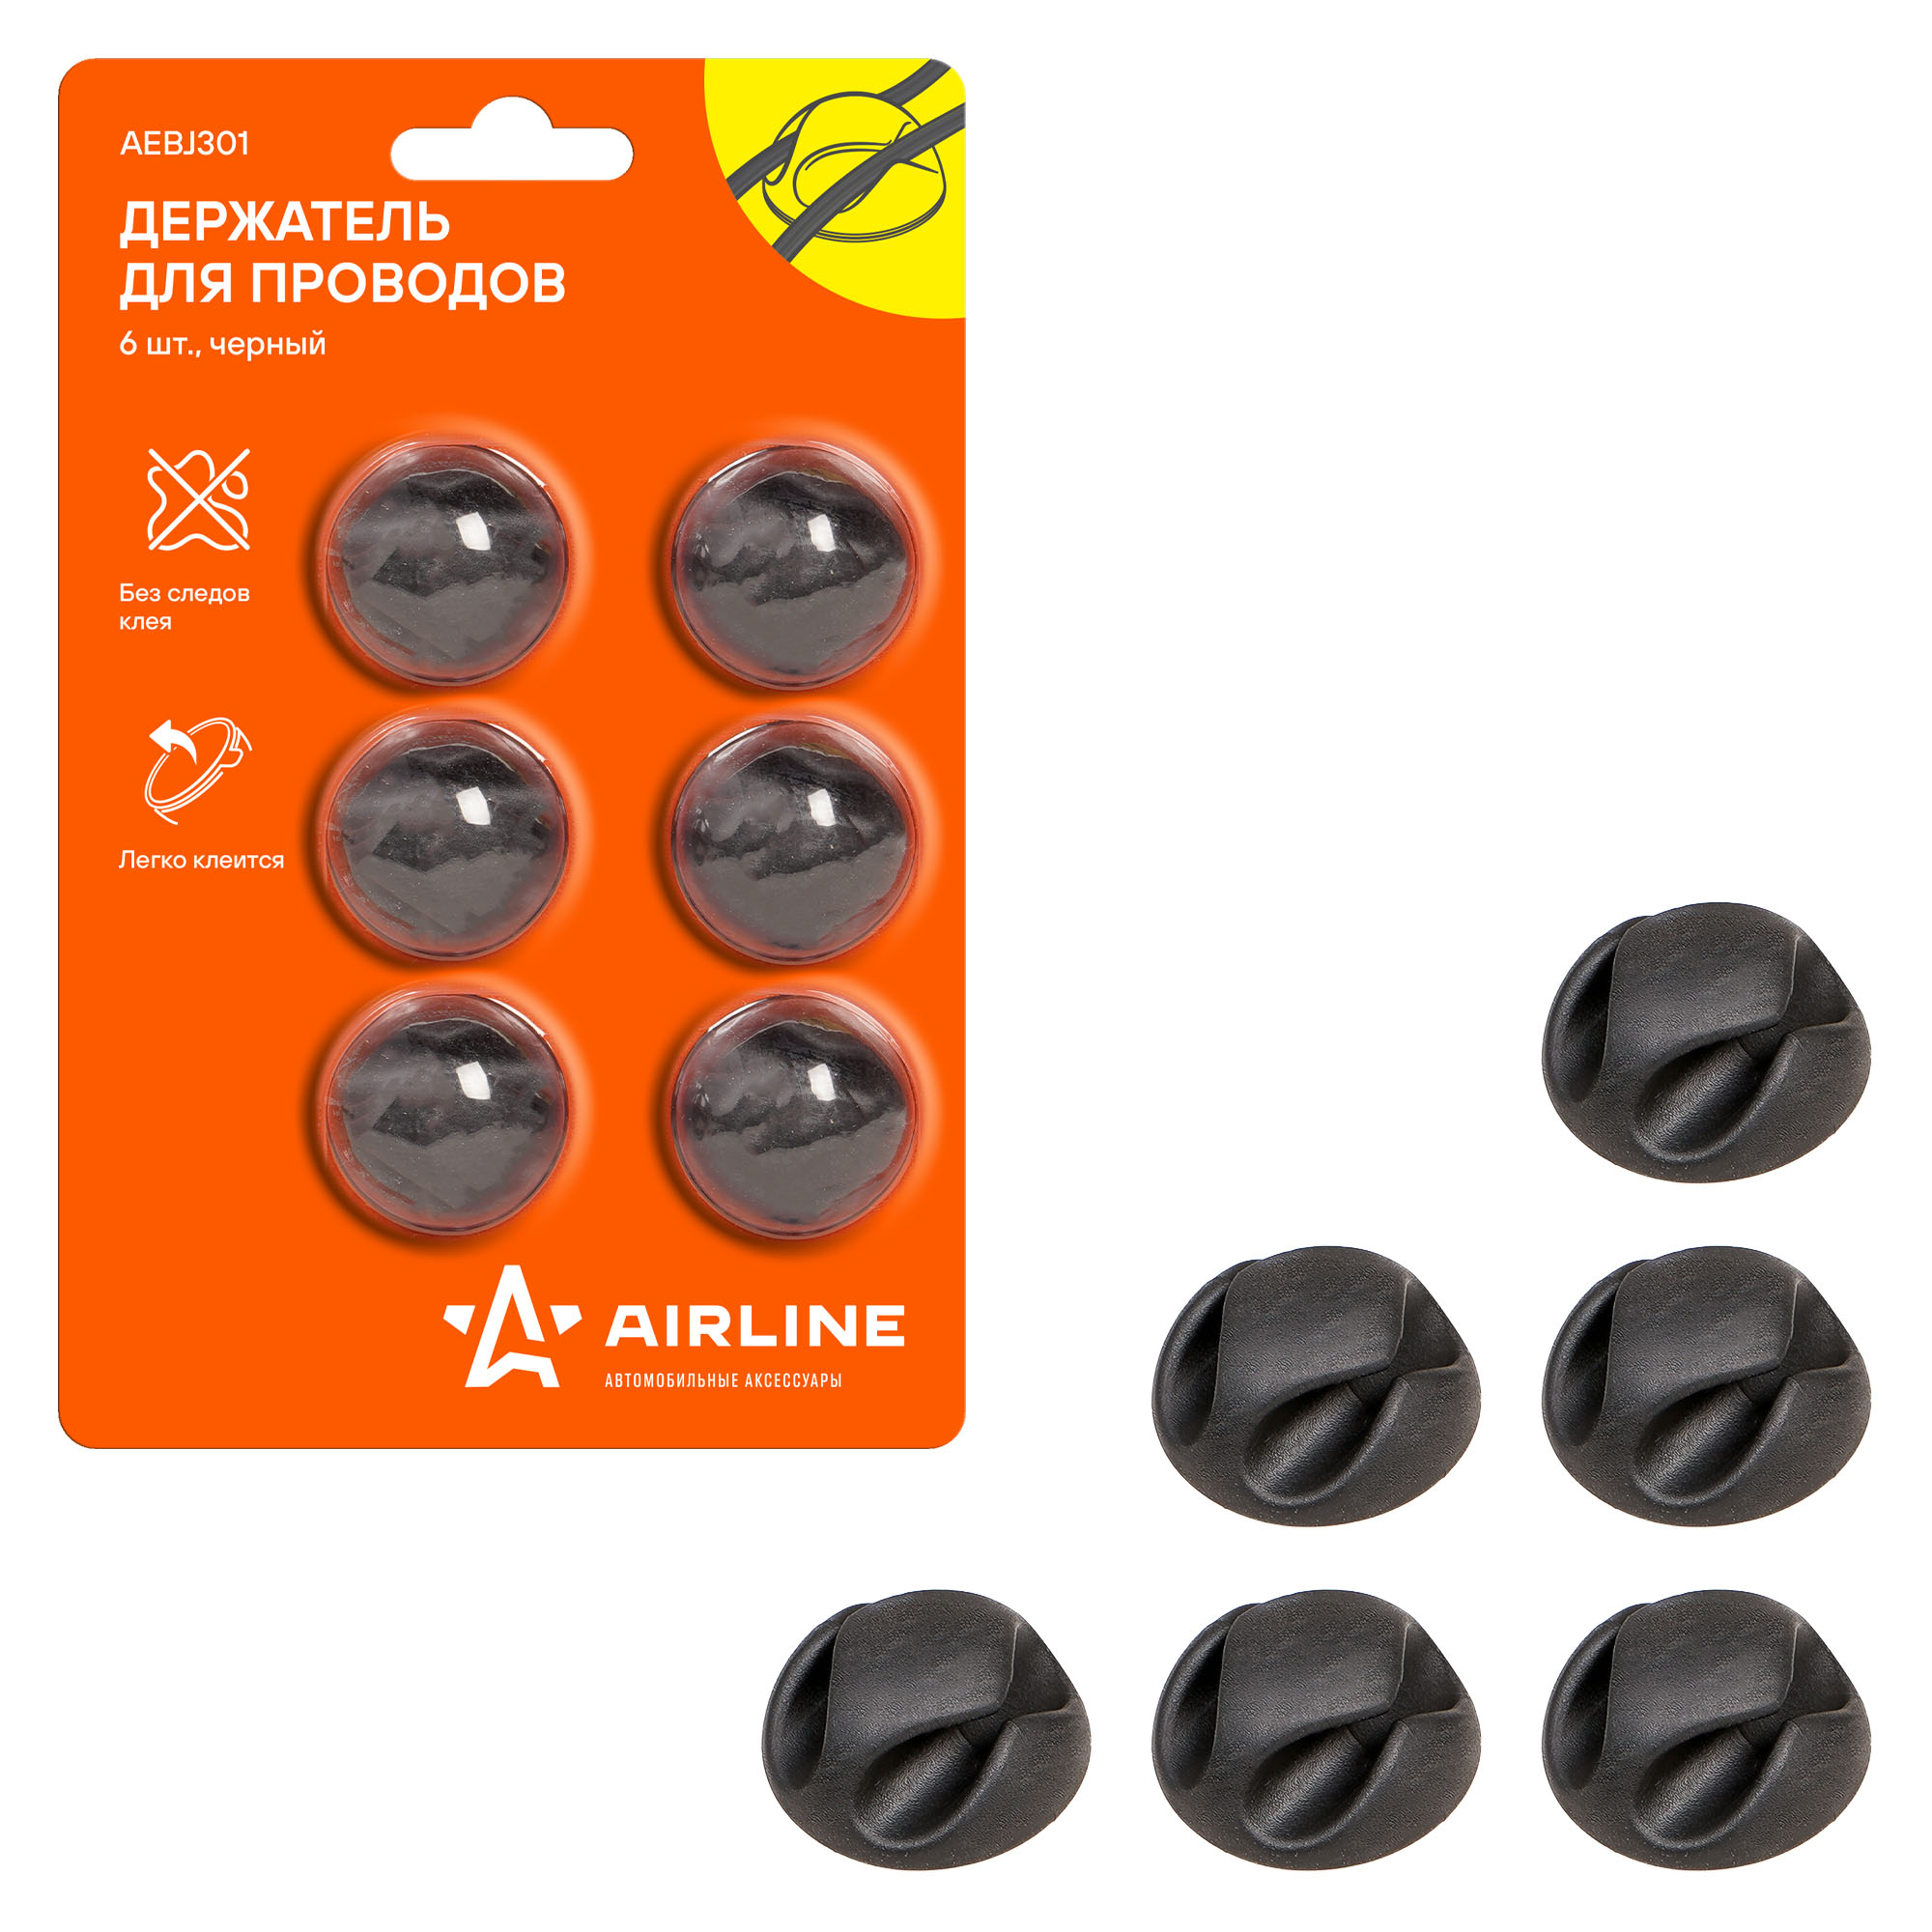 Держатель для 2 проводов (6шт. в комплекте) - AIRLINE AEBJ301